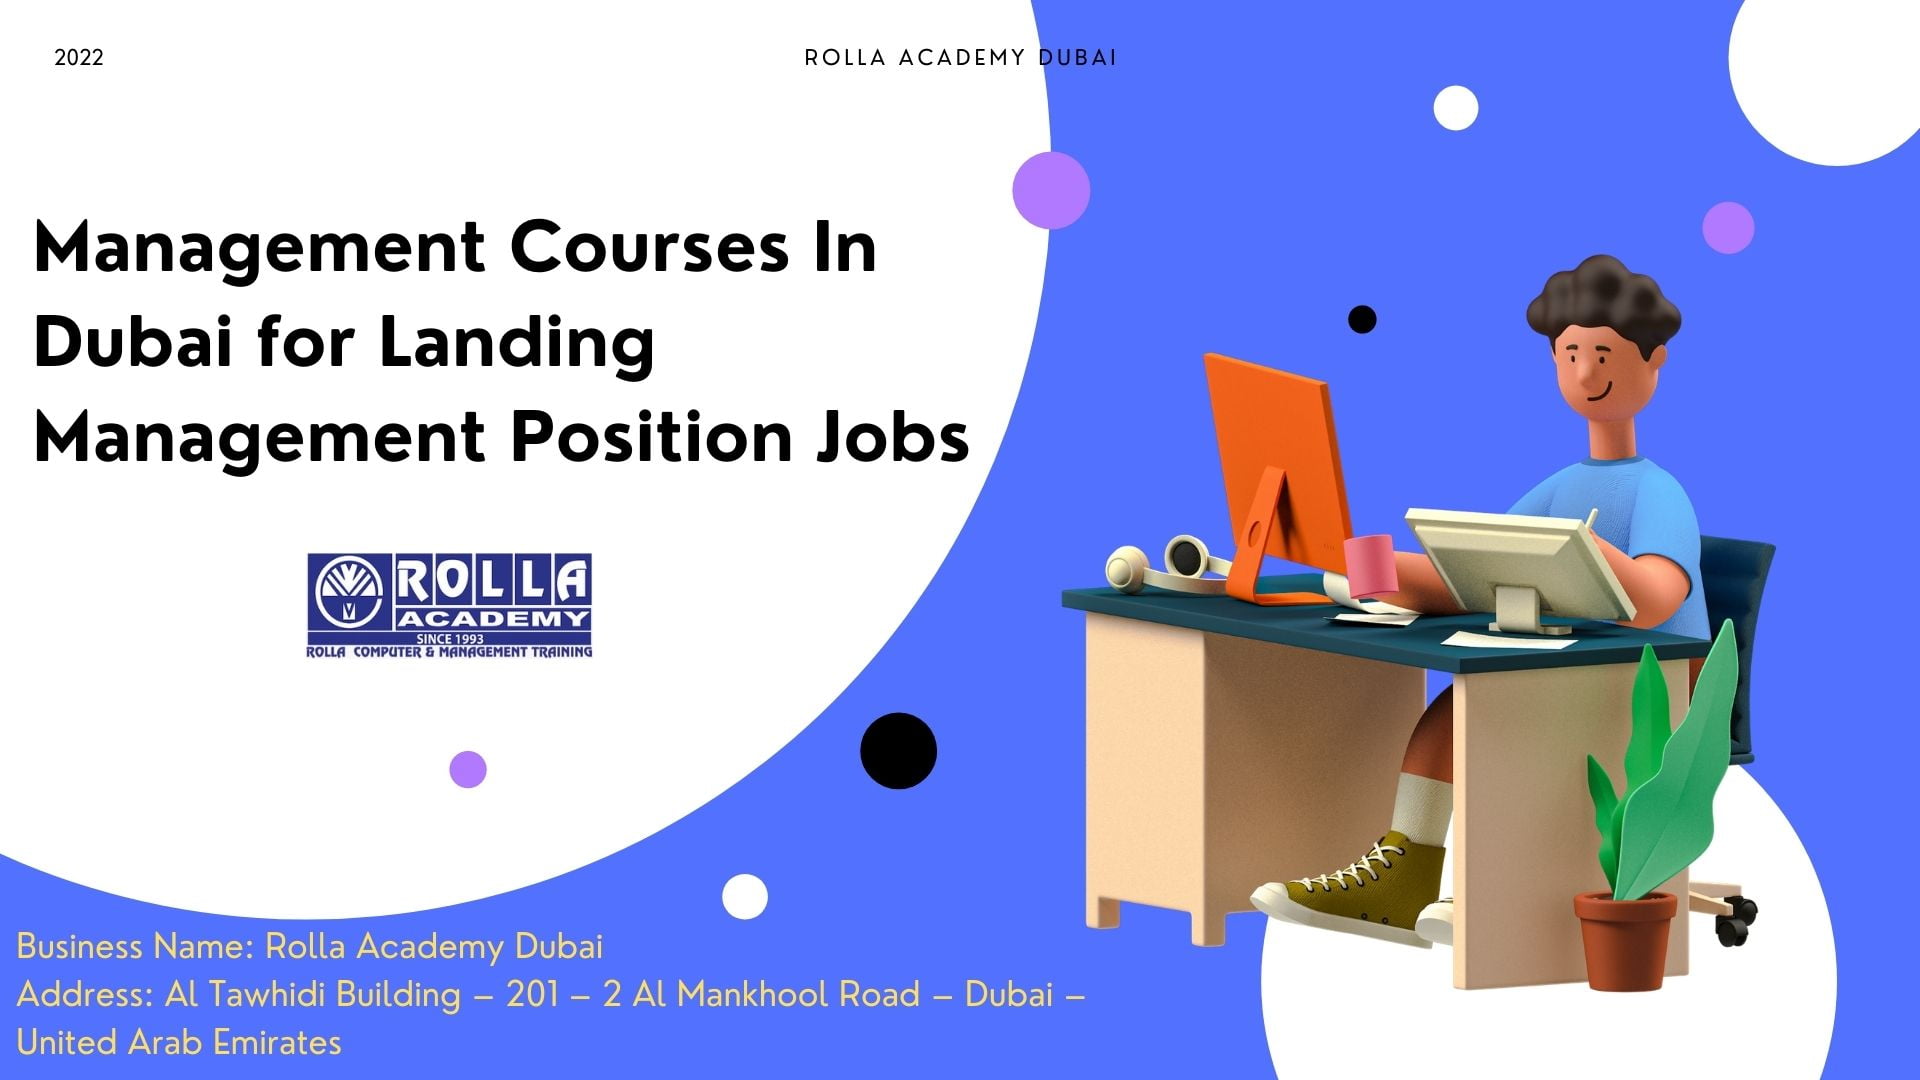 Management Courses In Dubai for Landing Management Position Jobs